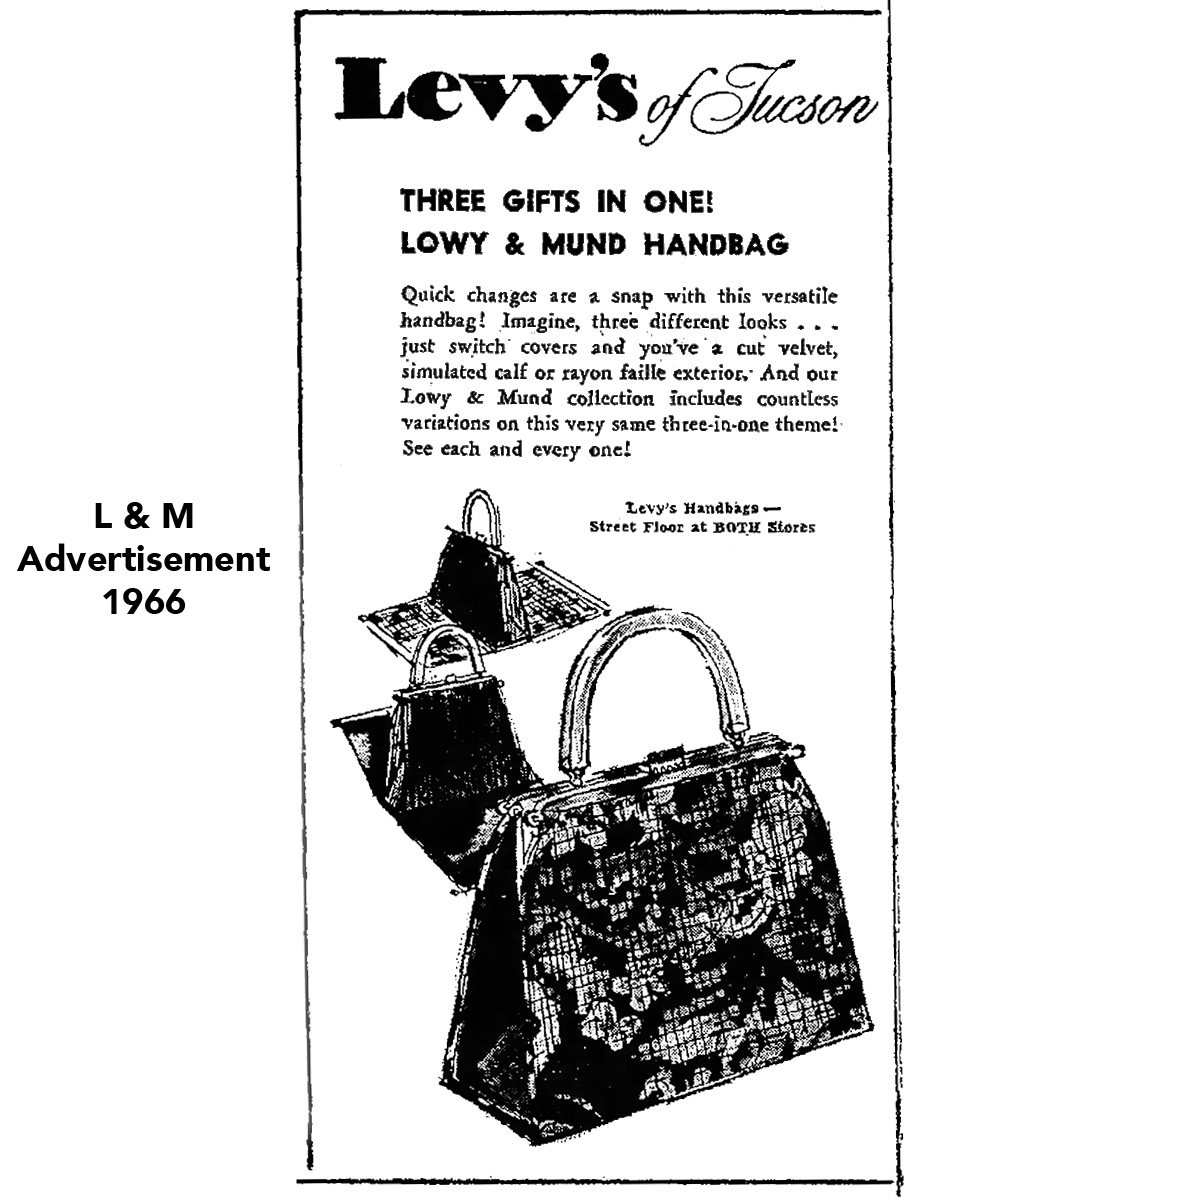 L & M reversible handbag ad